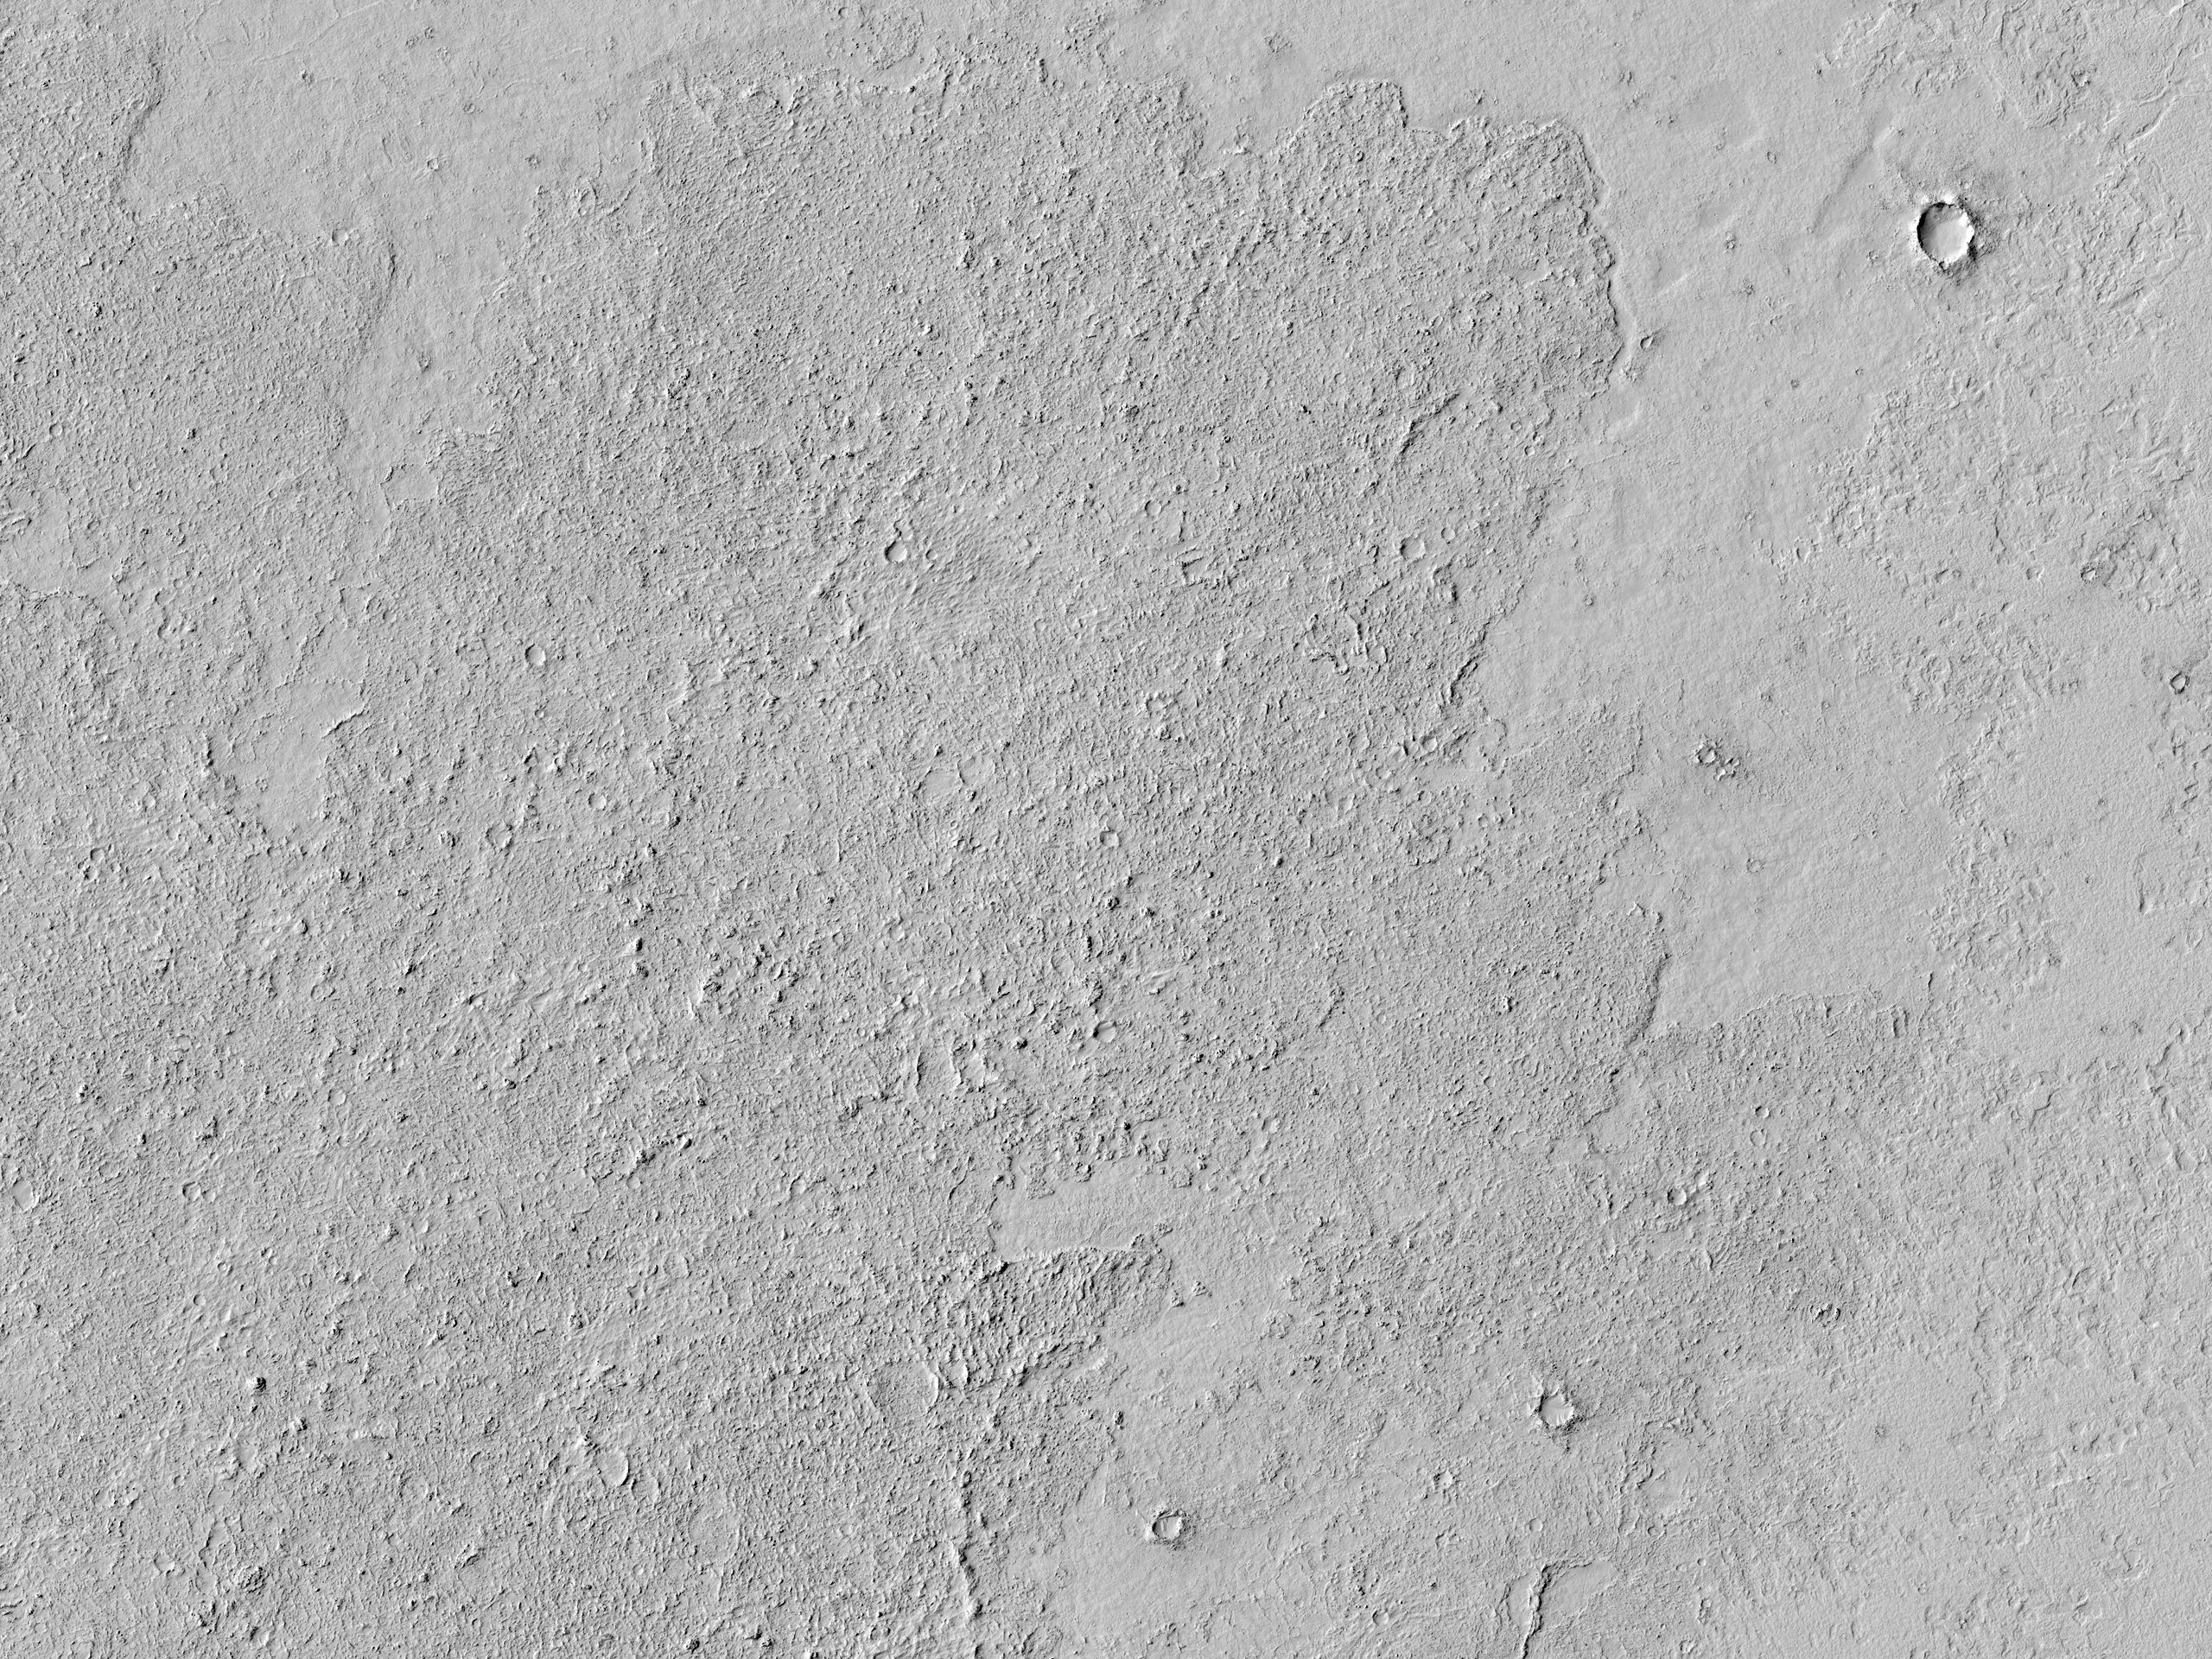 Lavastroomfront in Elysium Planitia